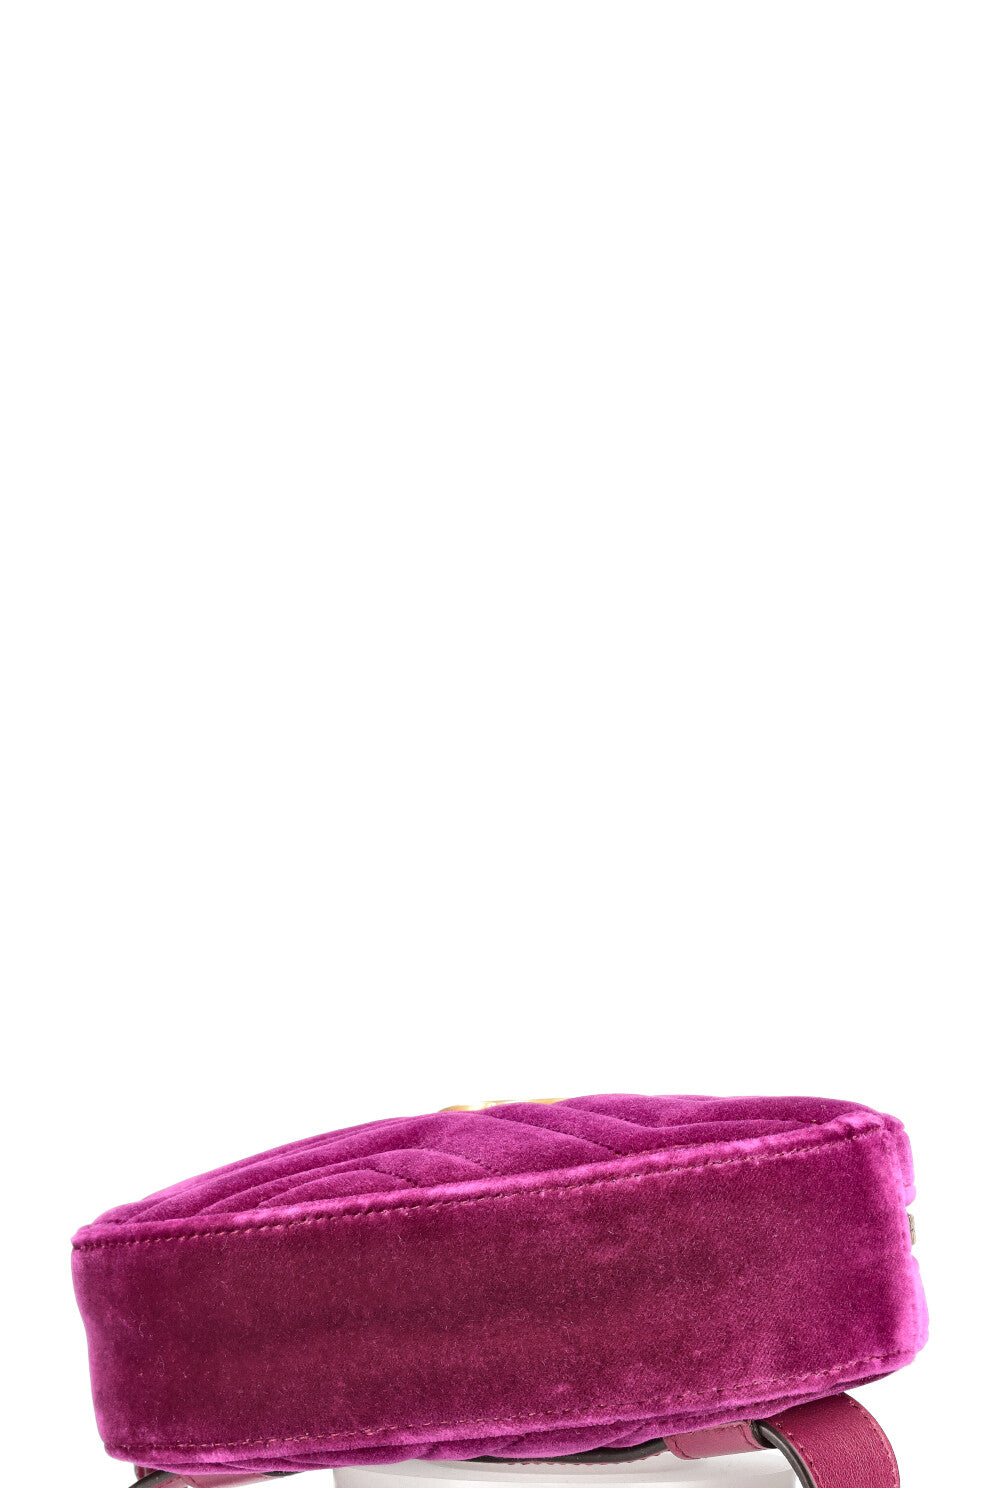 GUCCI Marmont Belt Bag Velvet Purple